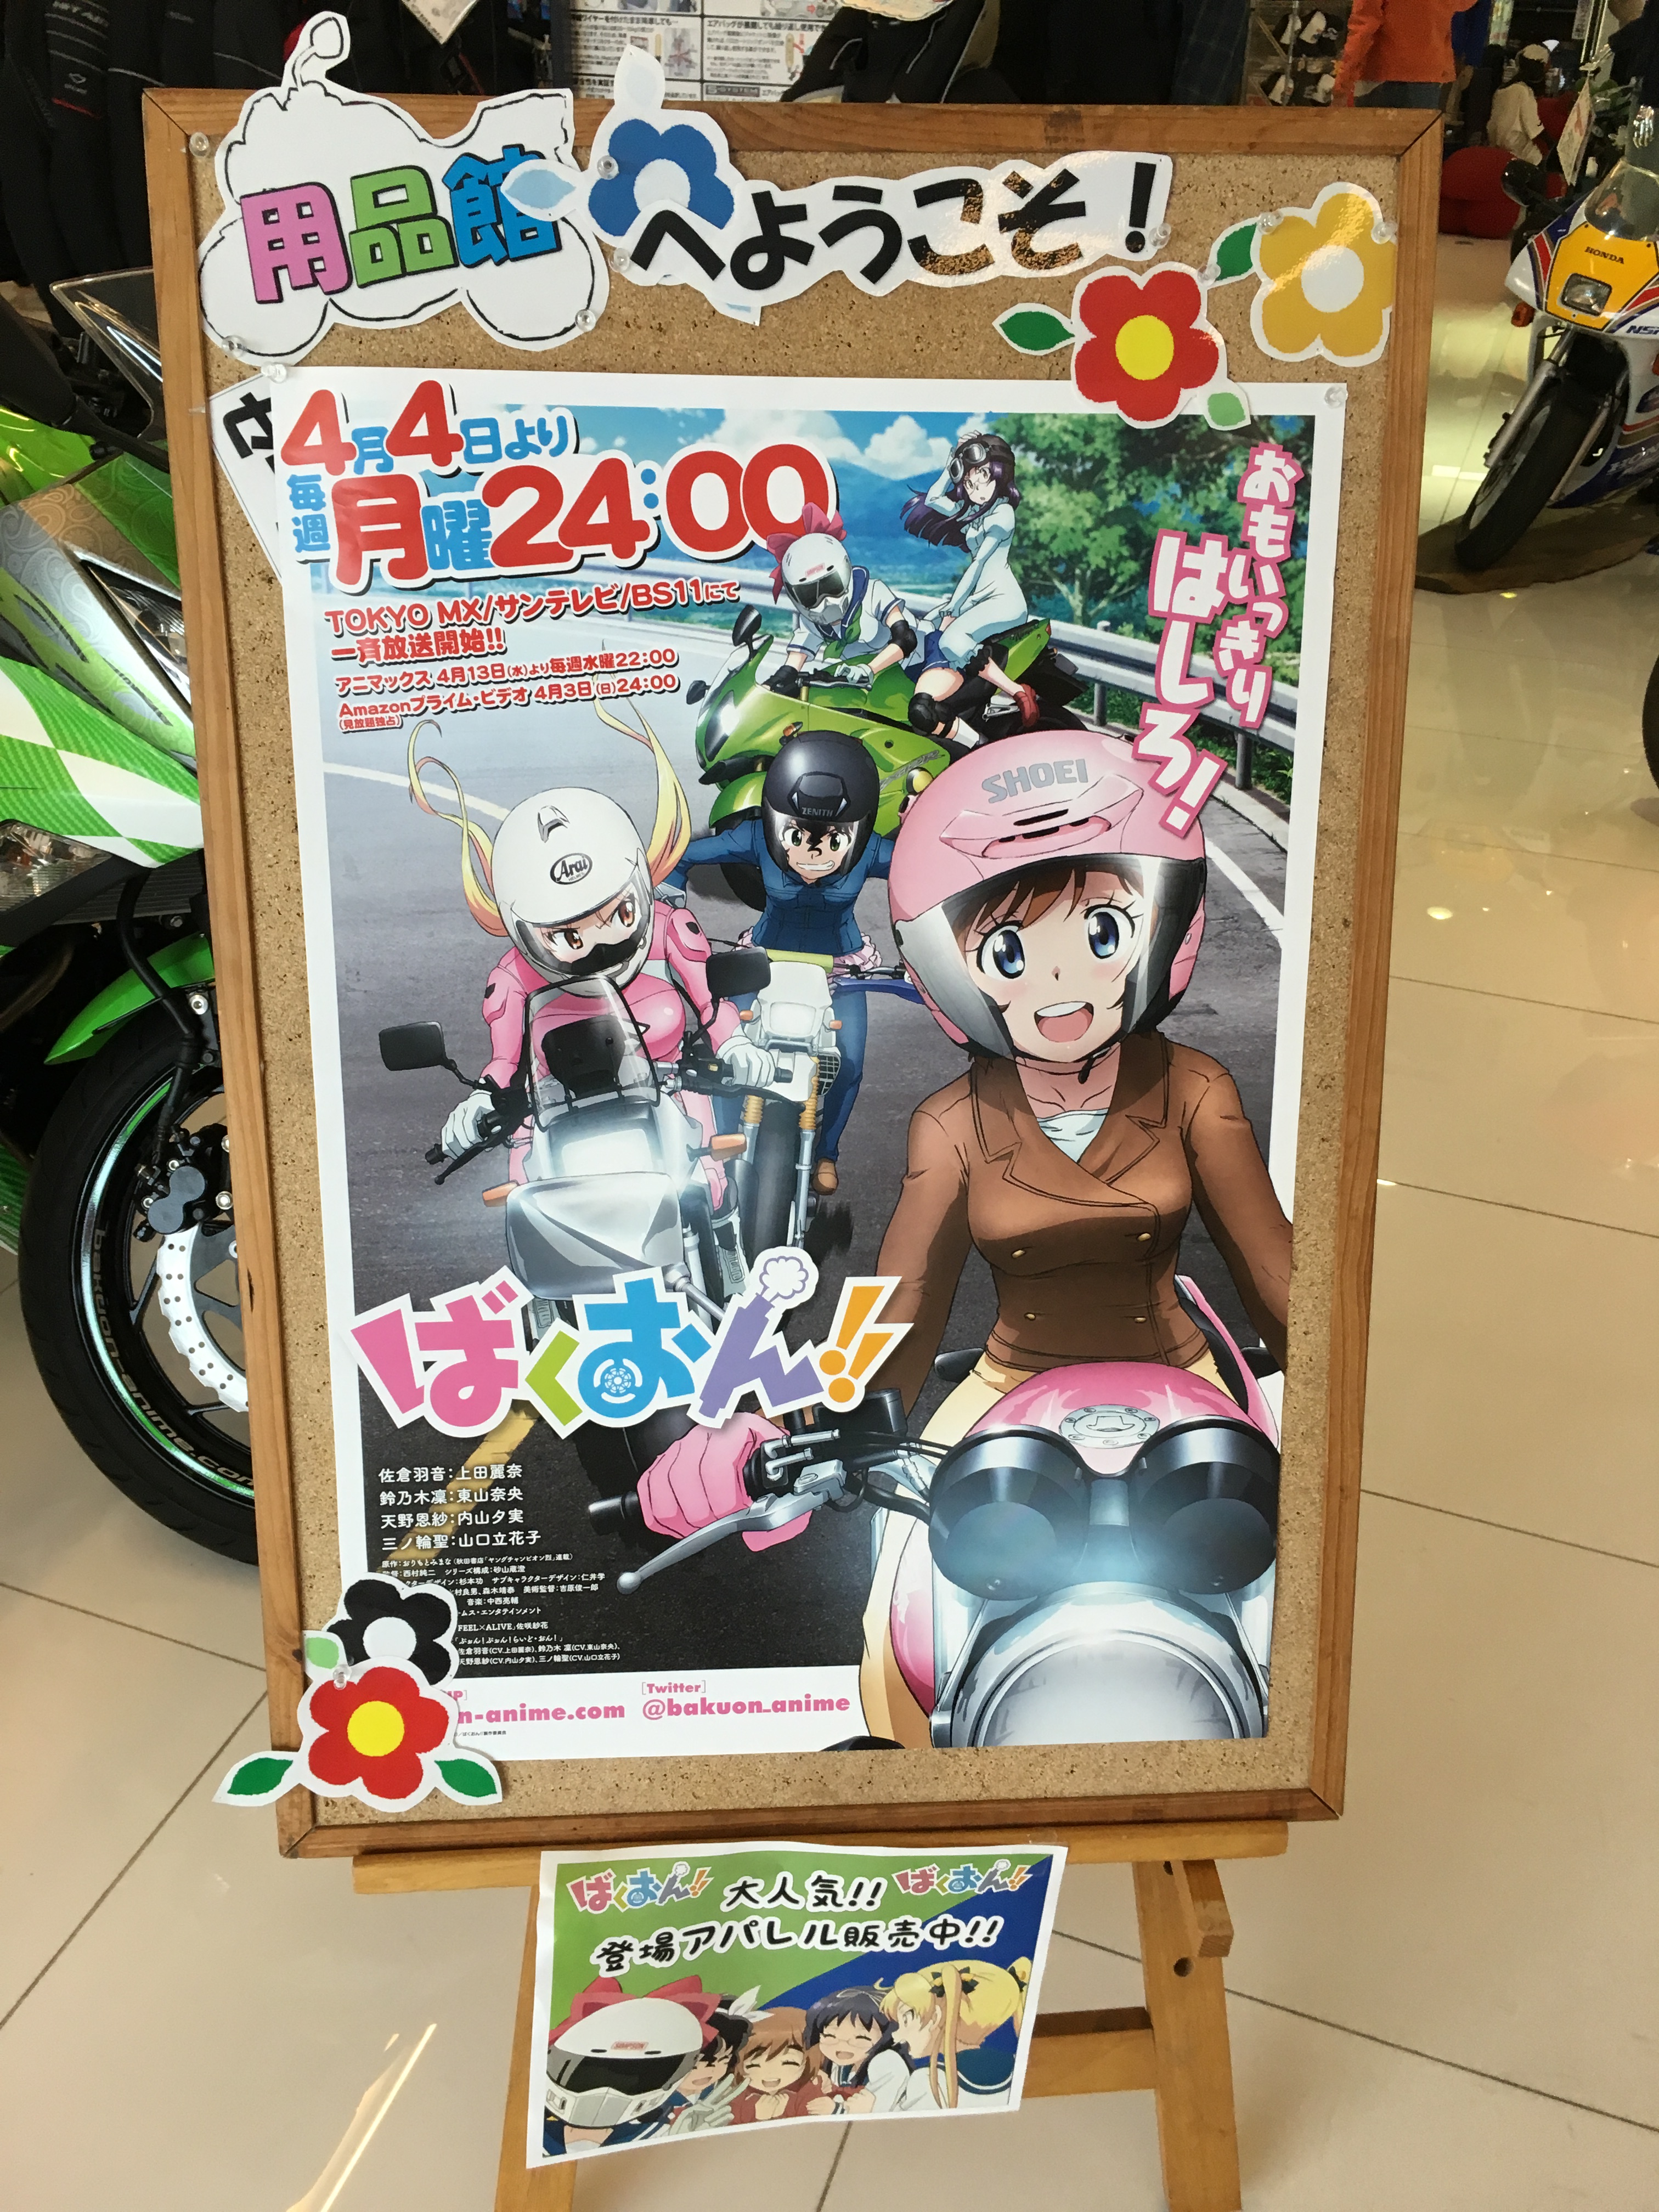 ばくおんヽ O 丿 最新情報 U Media ユーメディア 中古バイク 新車バイク探しの決定版 神奈川 東京でバイク探すならユーメディア